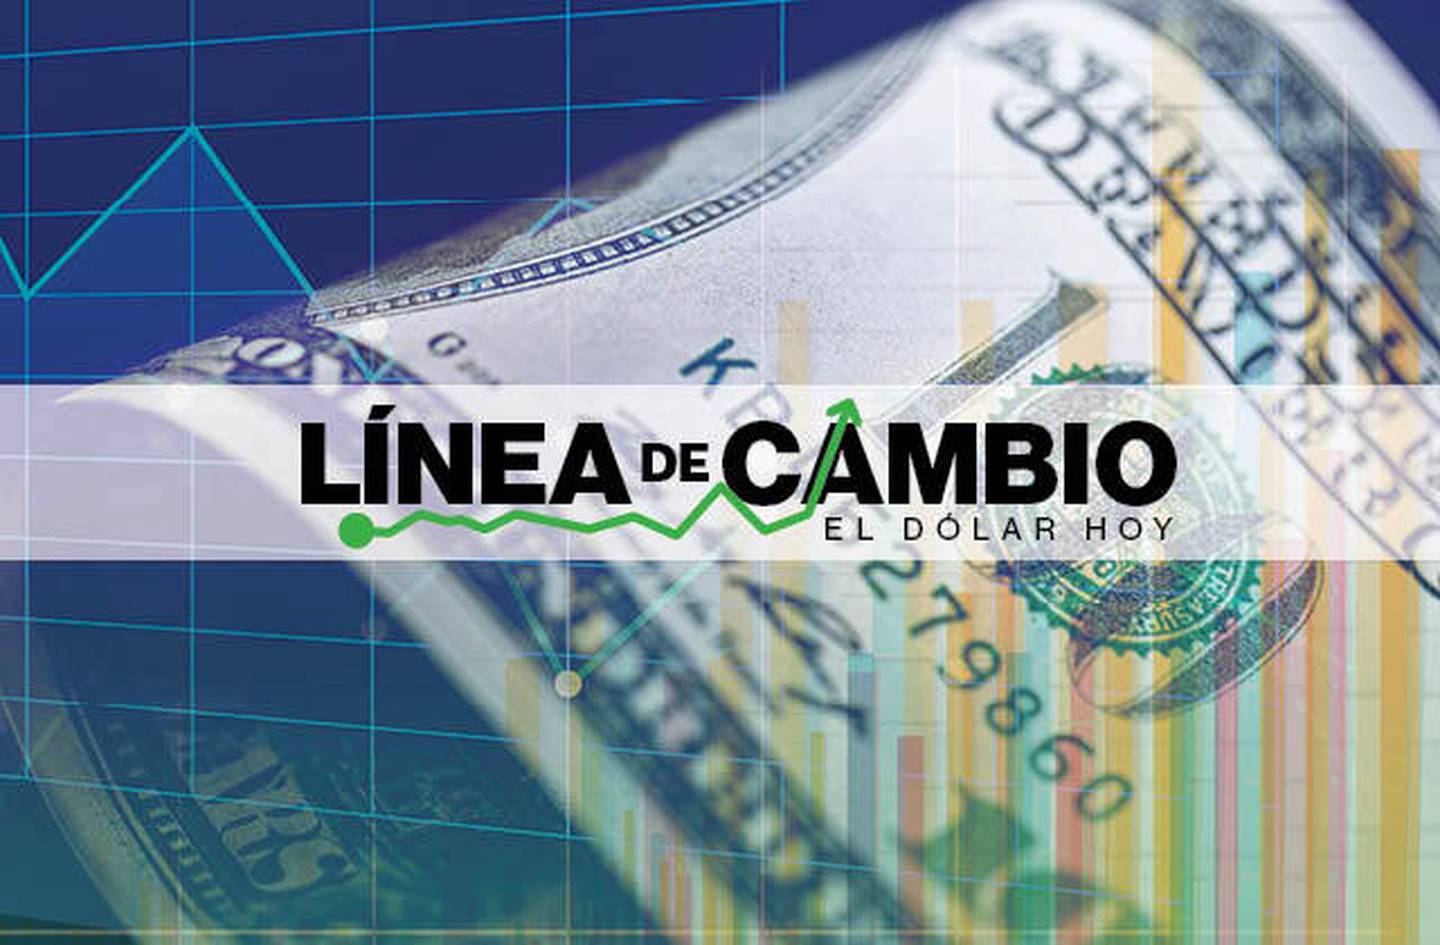 Dólar hoy: Peso de Chile cae tras aumento de su tasa de interés menor al previsto.